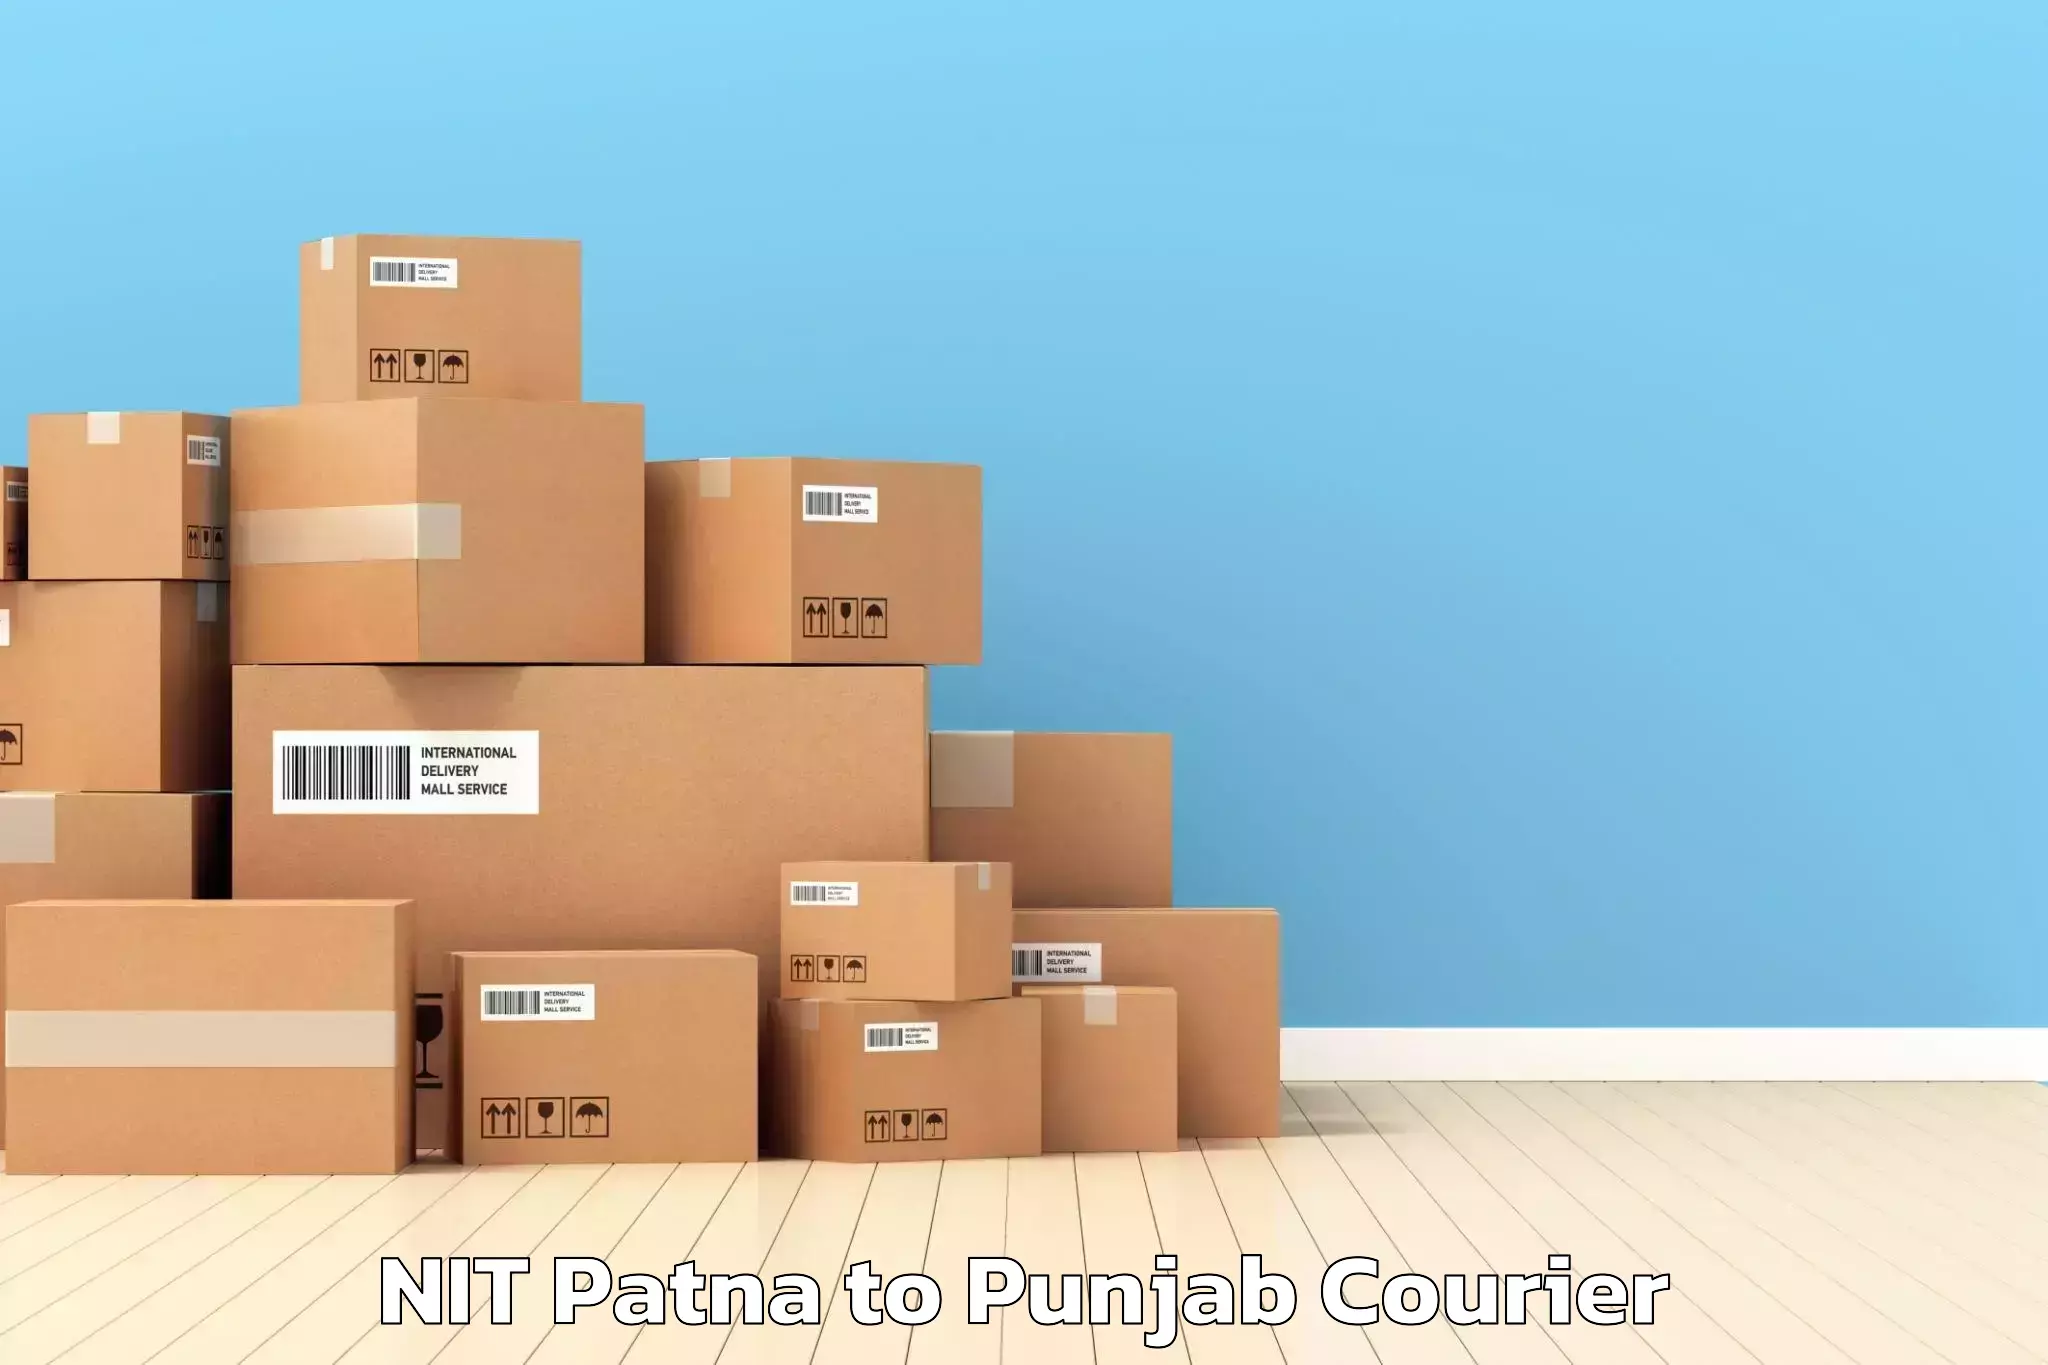 Furniture transport services NIT Patna to Dinanagar